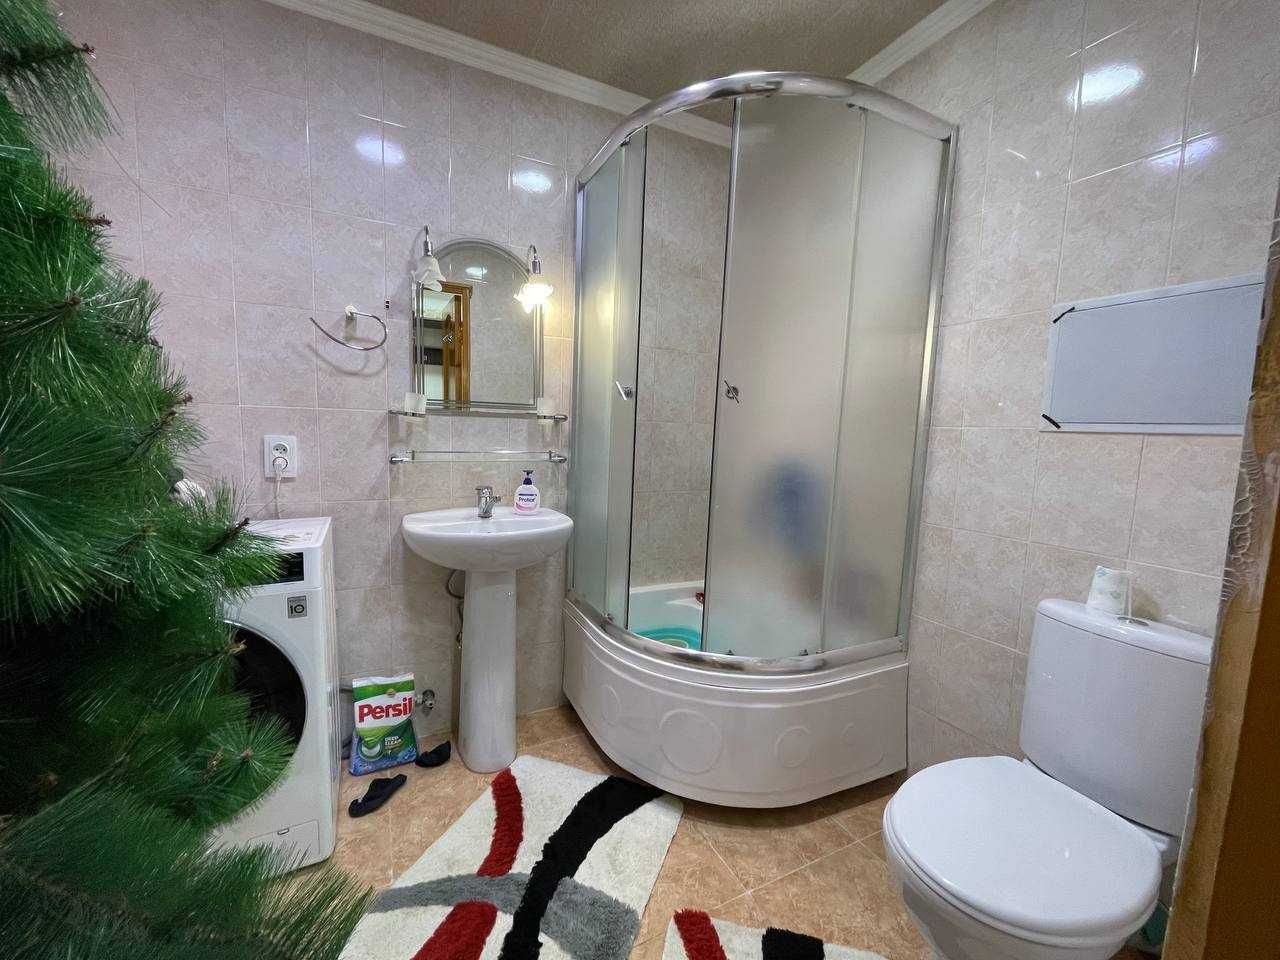 Продается квартира на Новомосковской 2/3/5 49 м² с хорошим ремонтом!